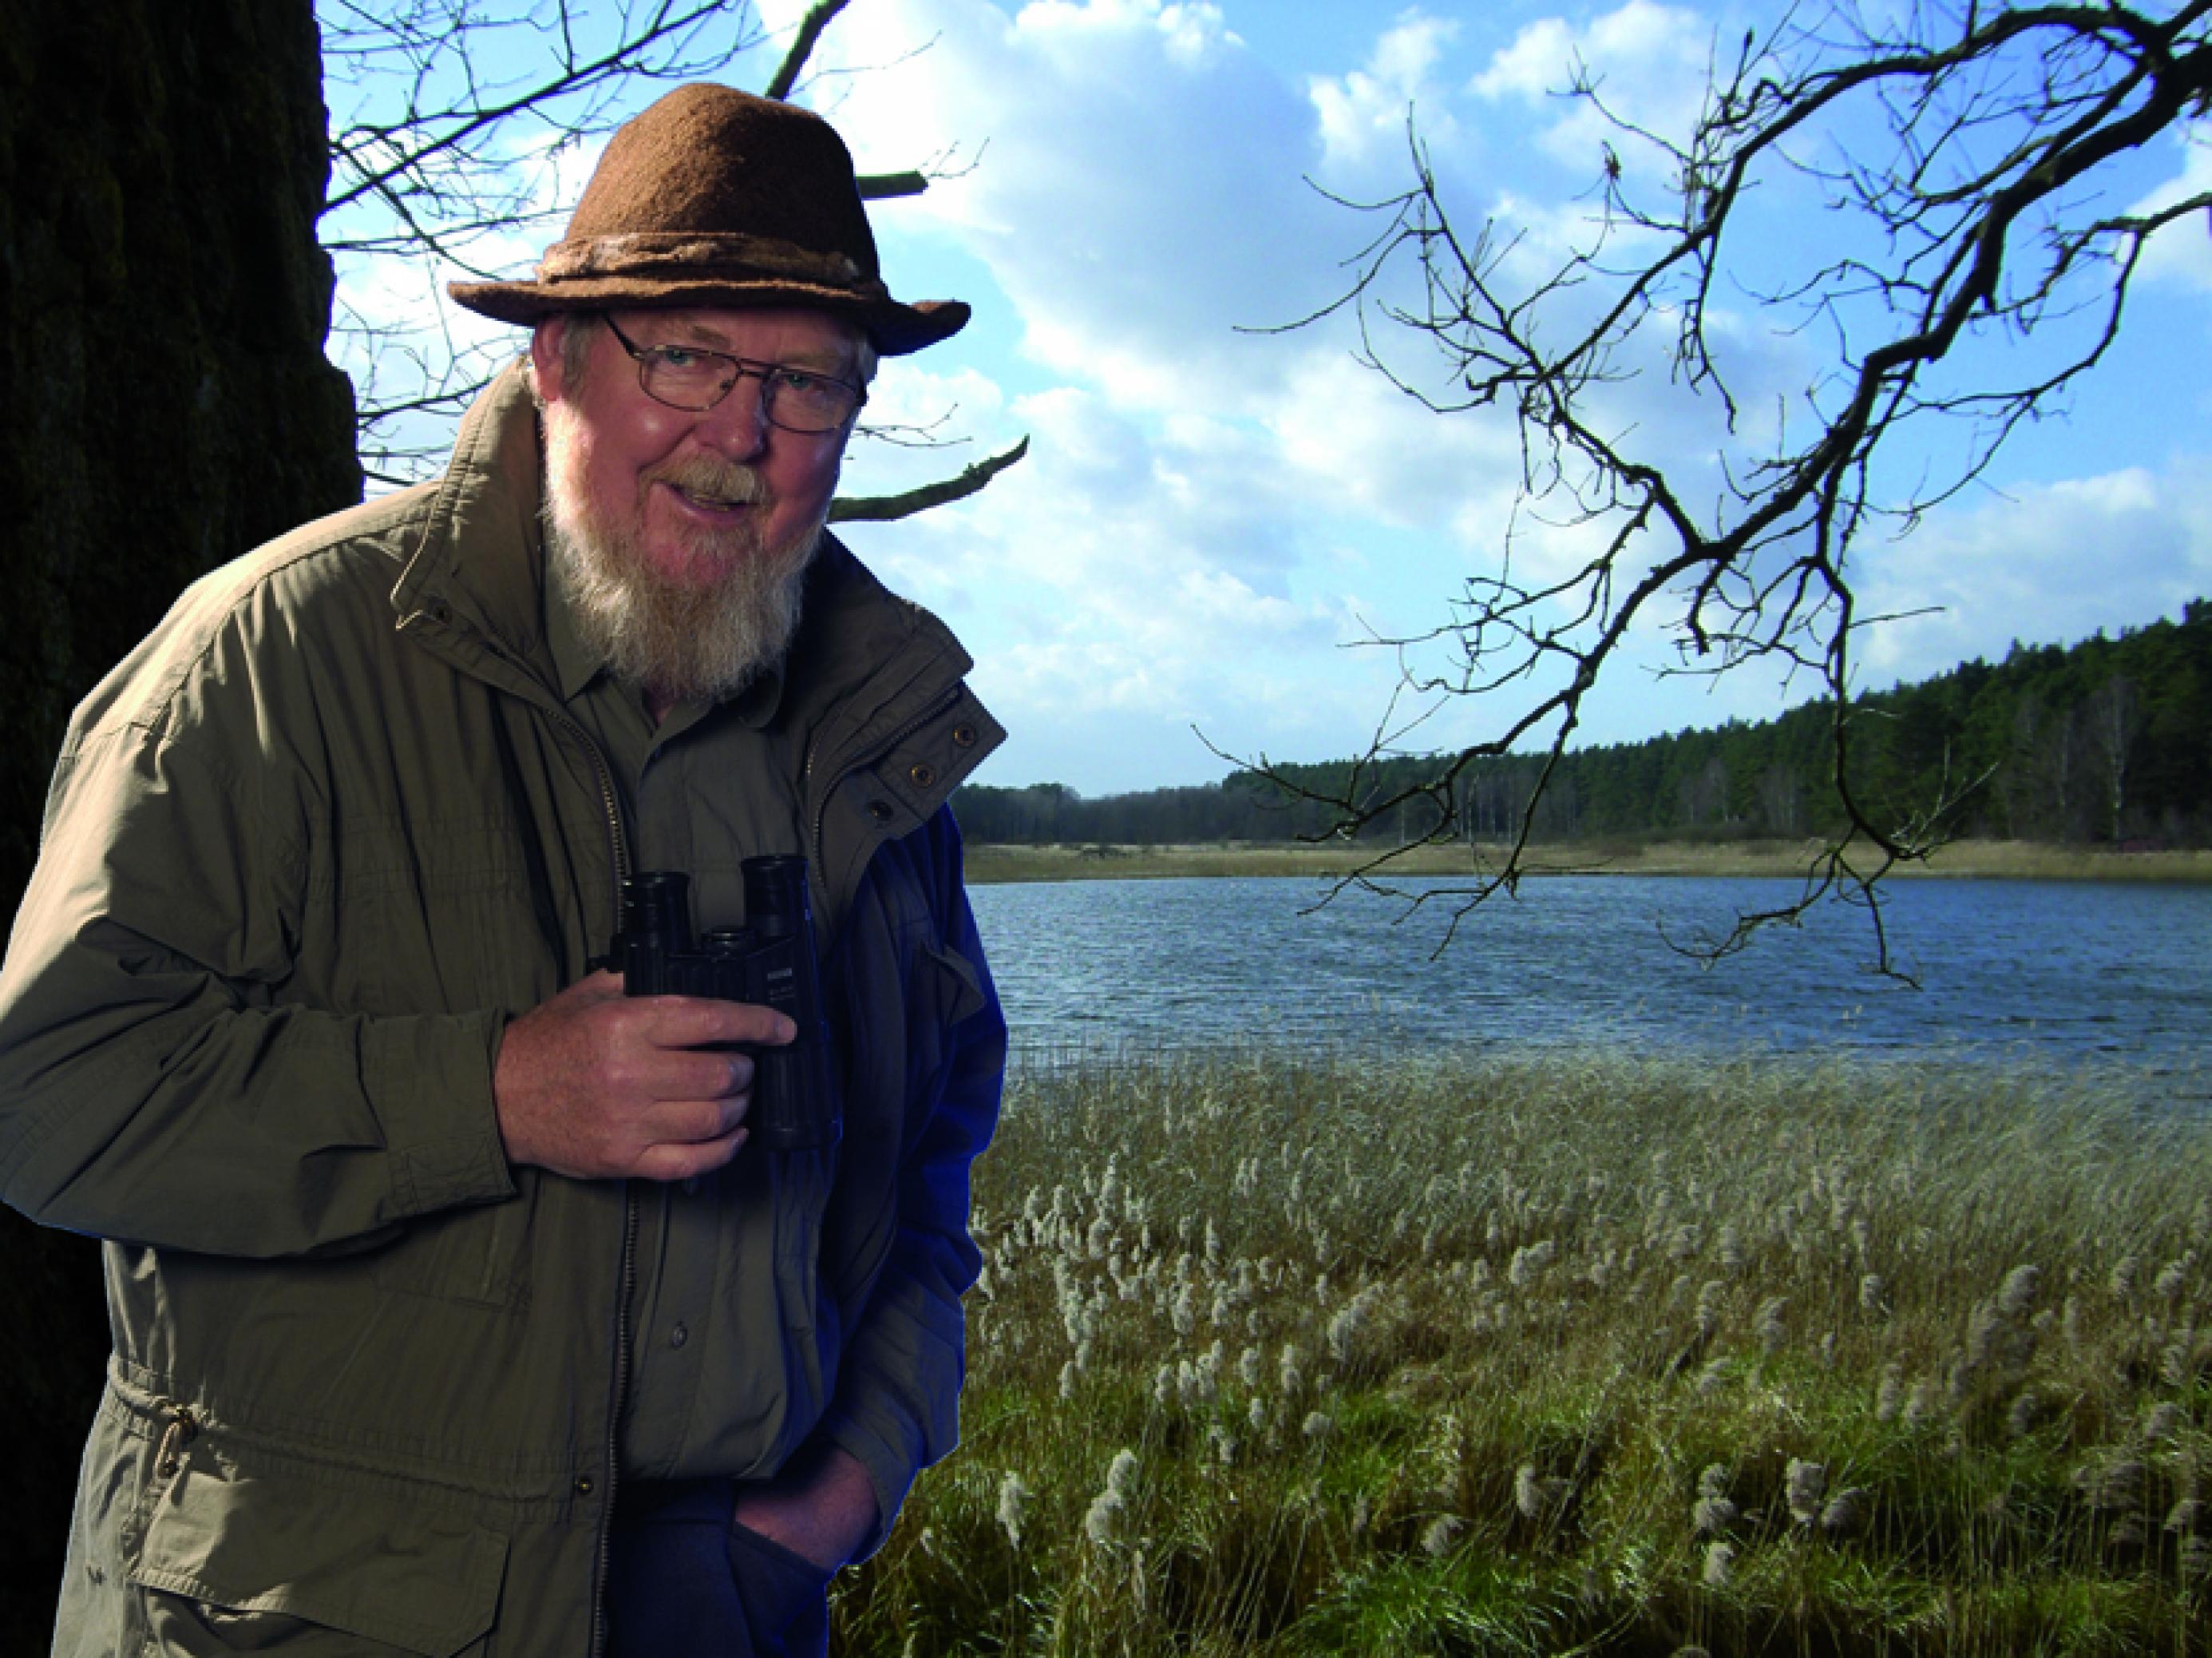 Mann mit Vollbart, Hut und Fernglas in Landschaft mit Wasser